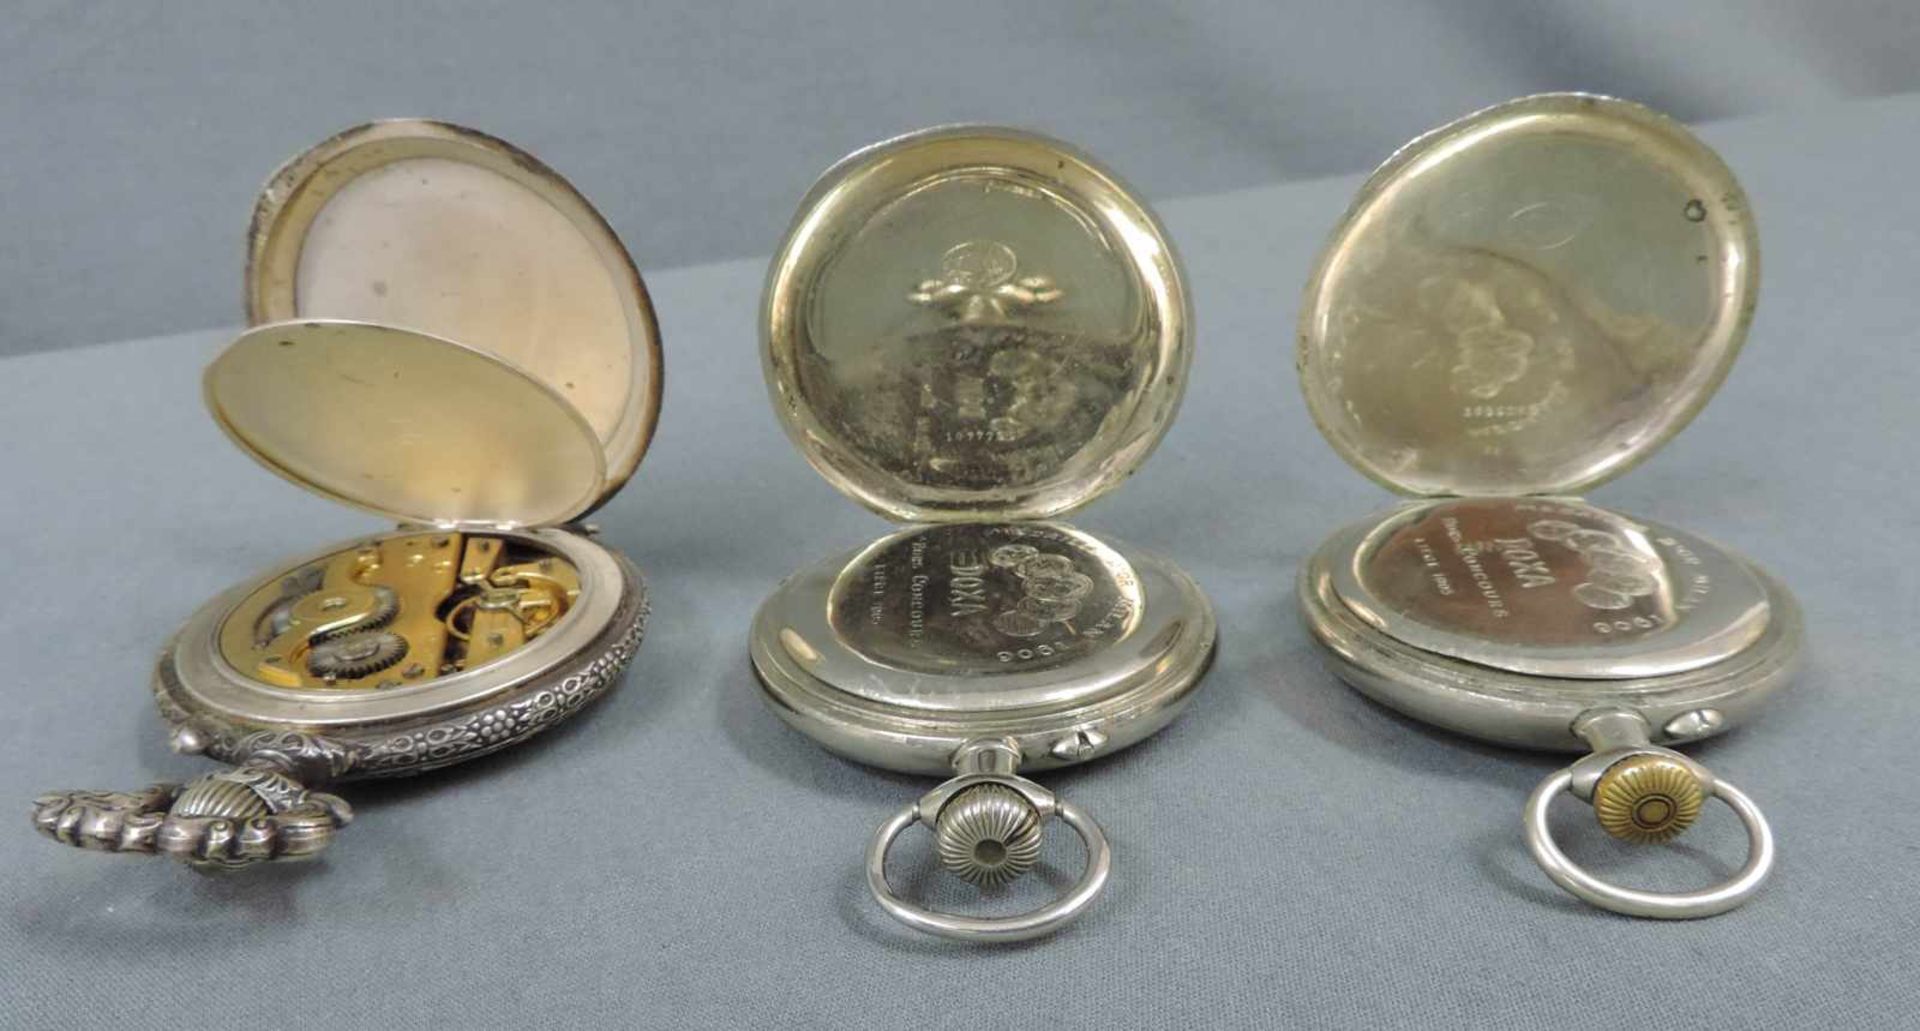 Drei Taschenuhren. Wohl 19. Jahrhundert 3 Pocket watches. - Bild 4 aus 5